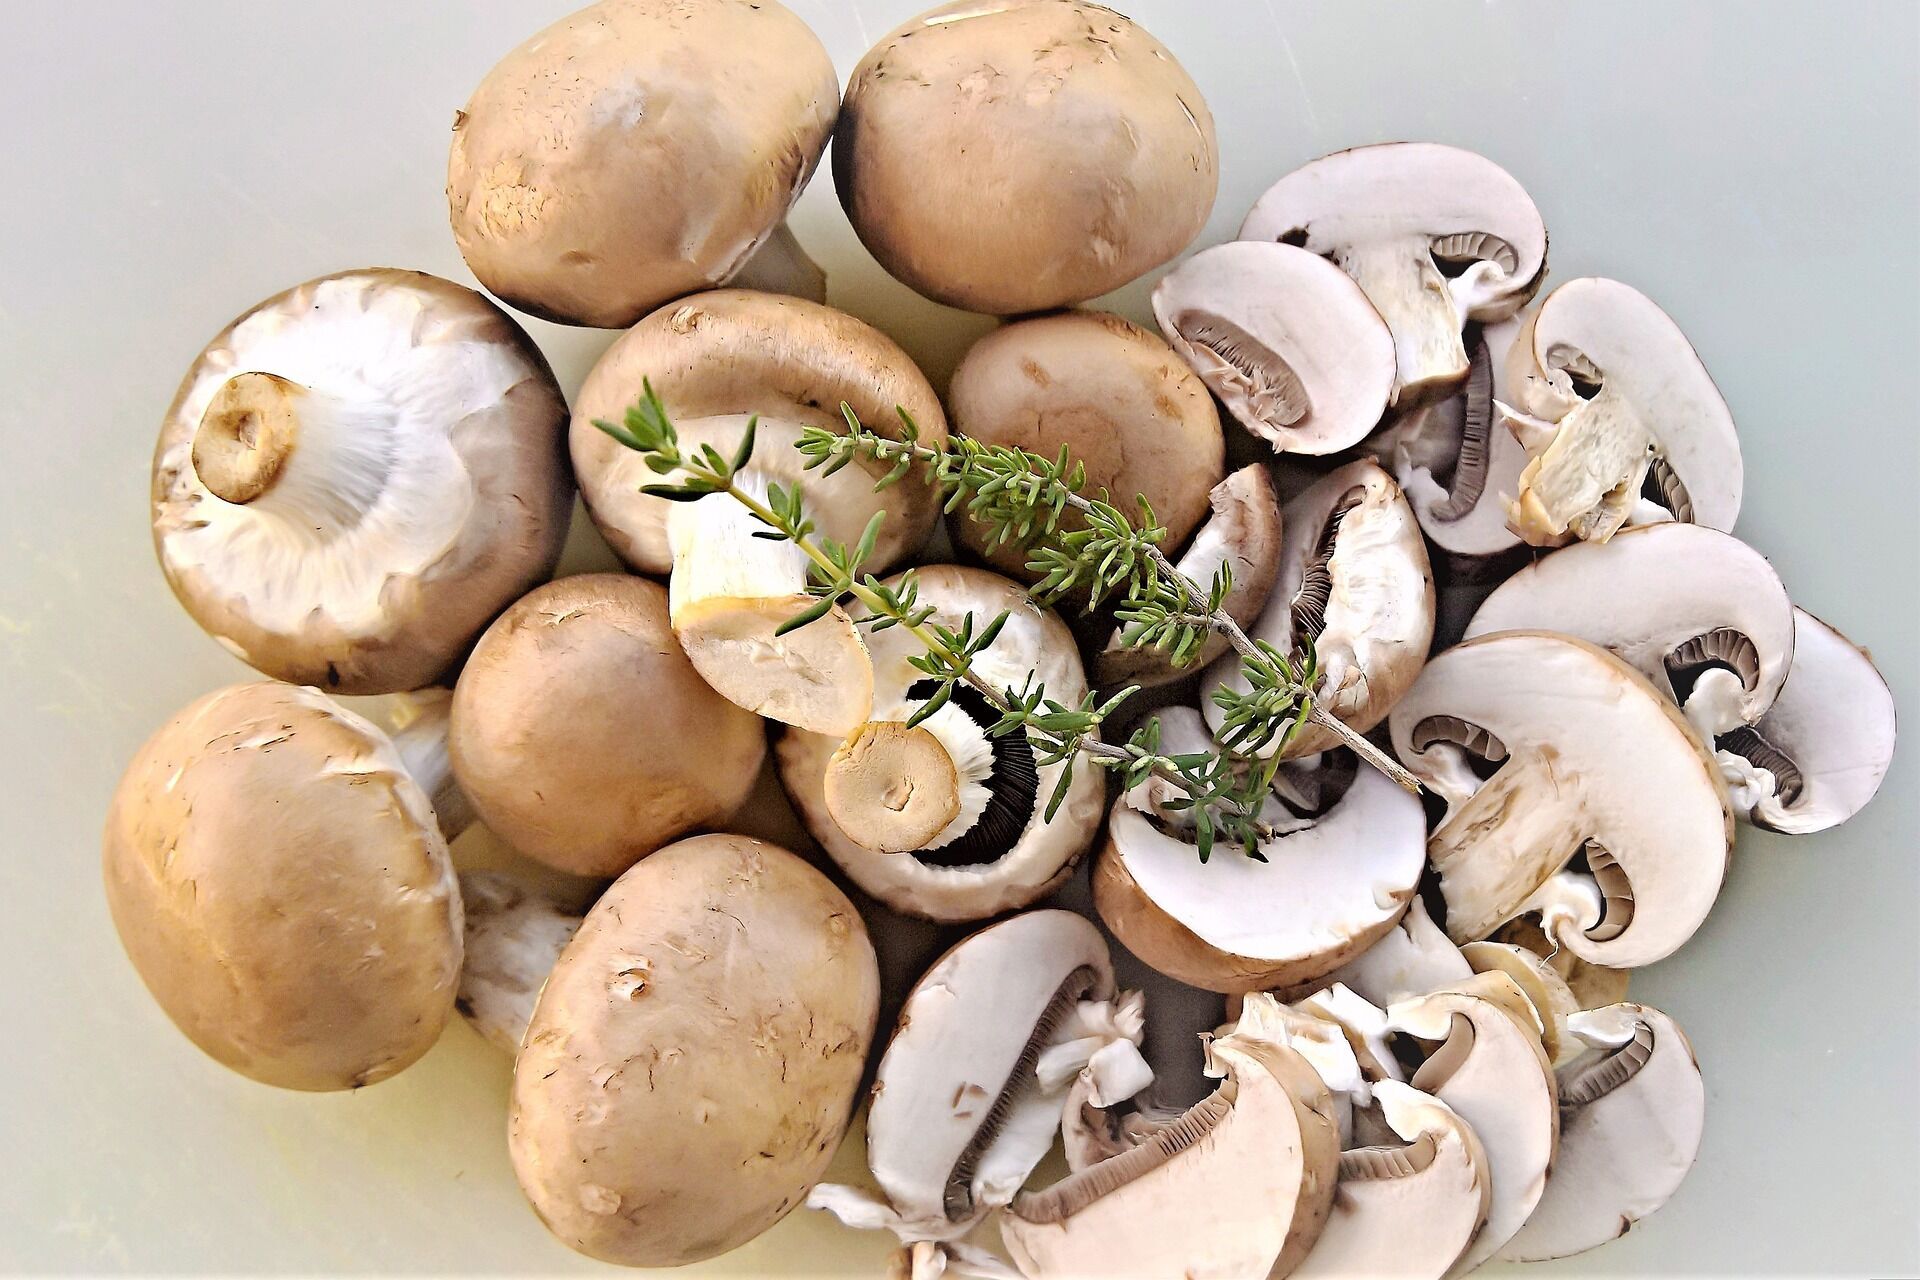 Mushrooms for preservation